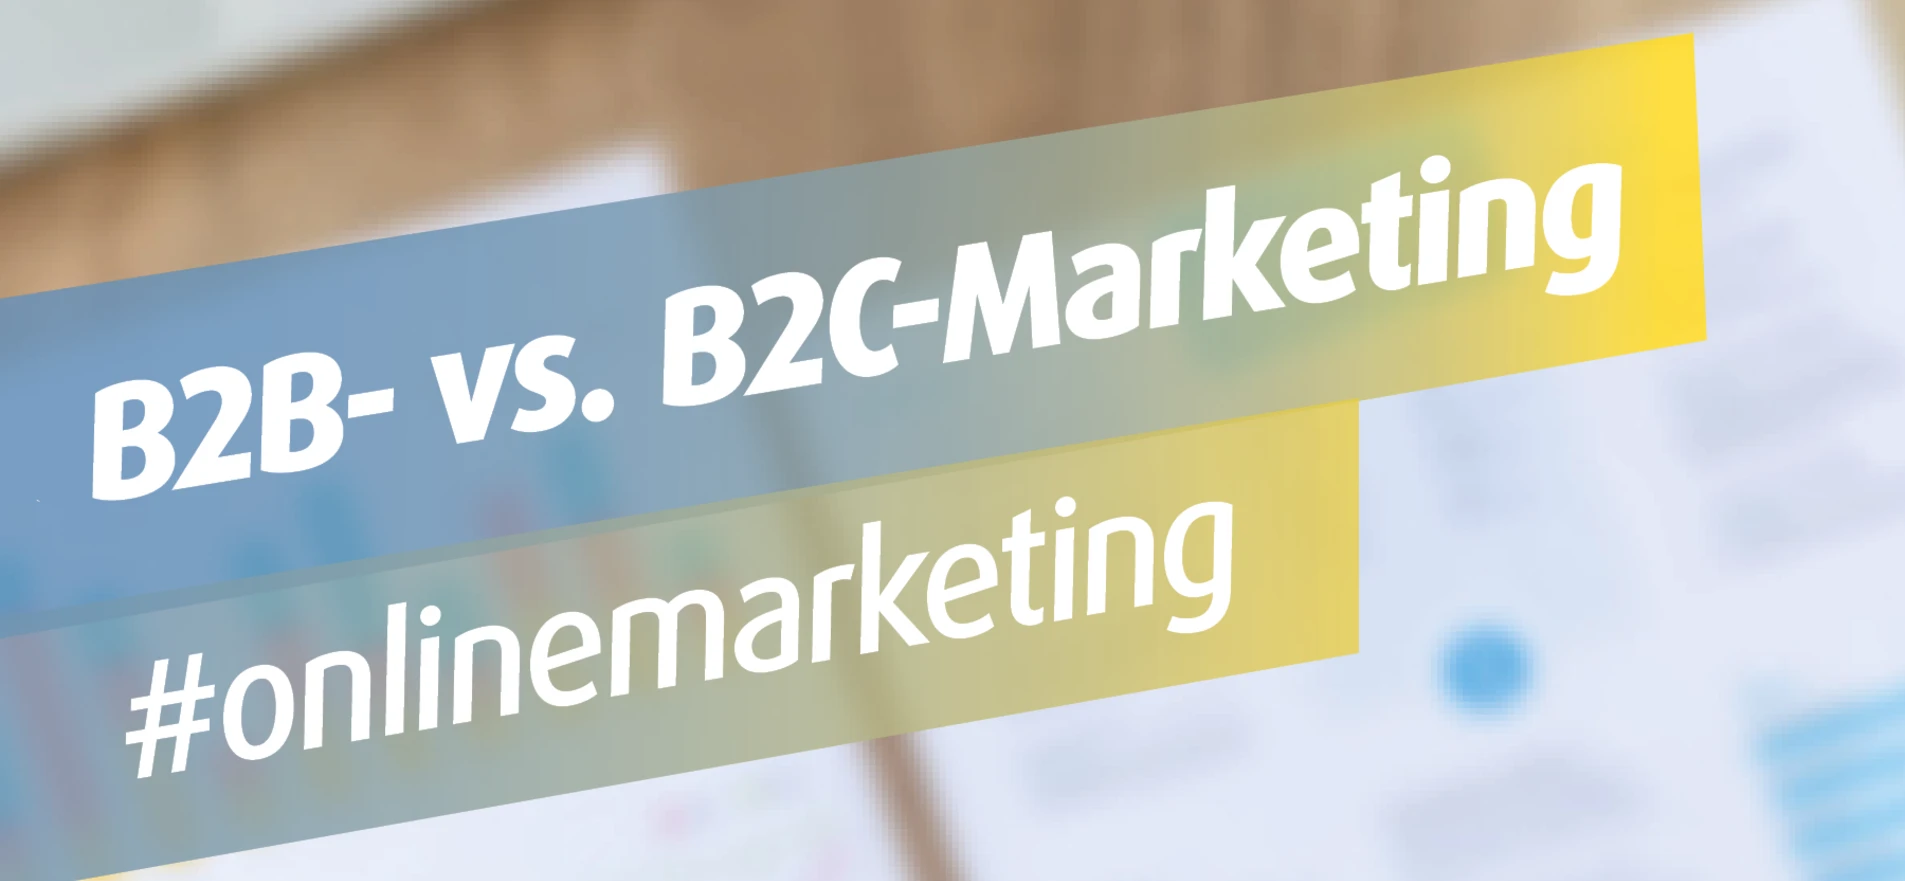 B2B- vs. B2C-Marketing